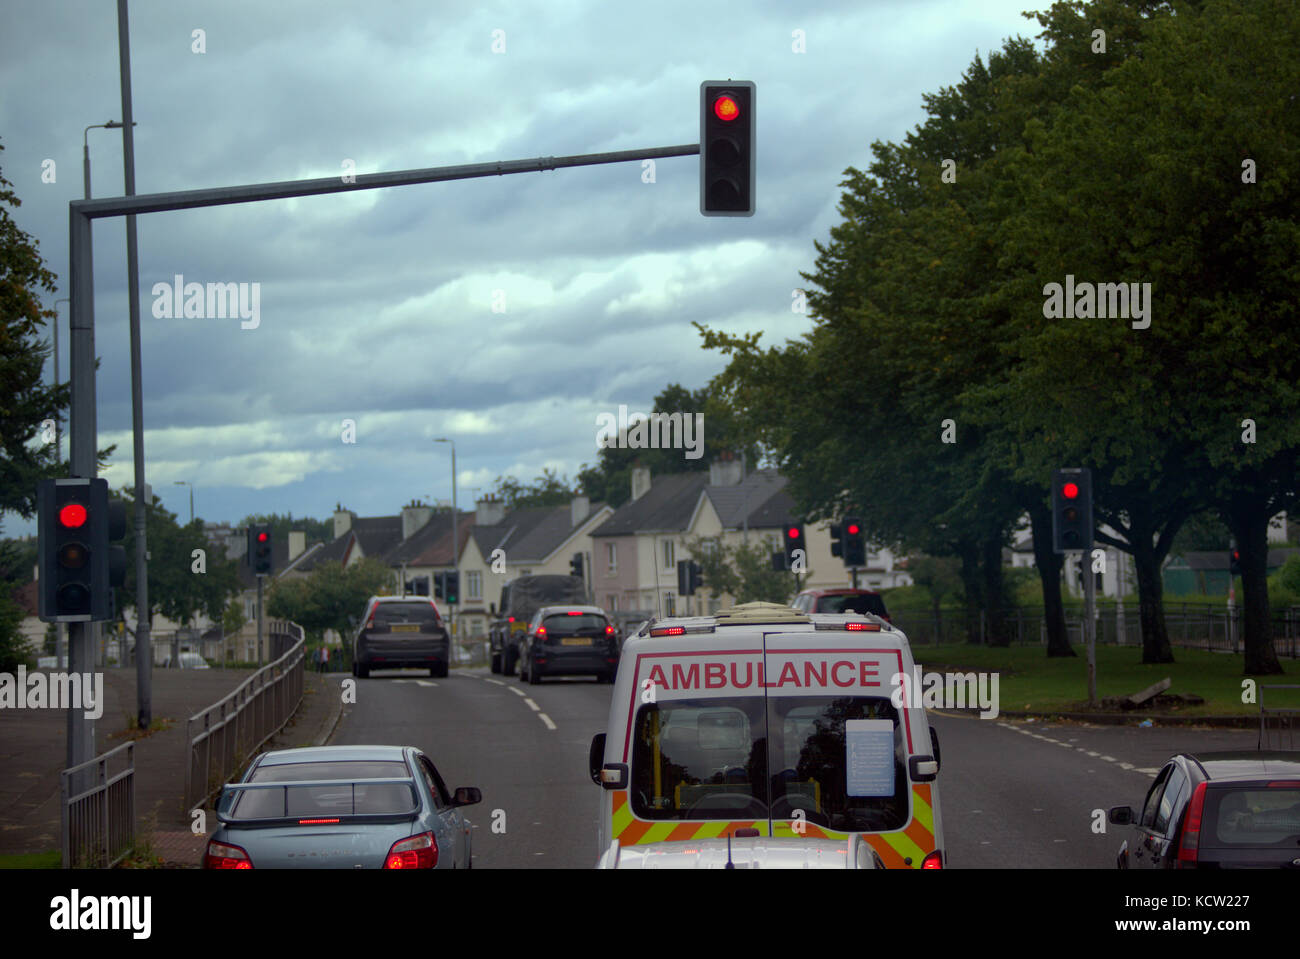 En los semáforos de ambulancia Great Western Road, Glasgow, Reino Unido Foto de stock